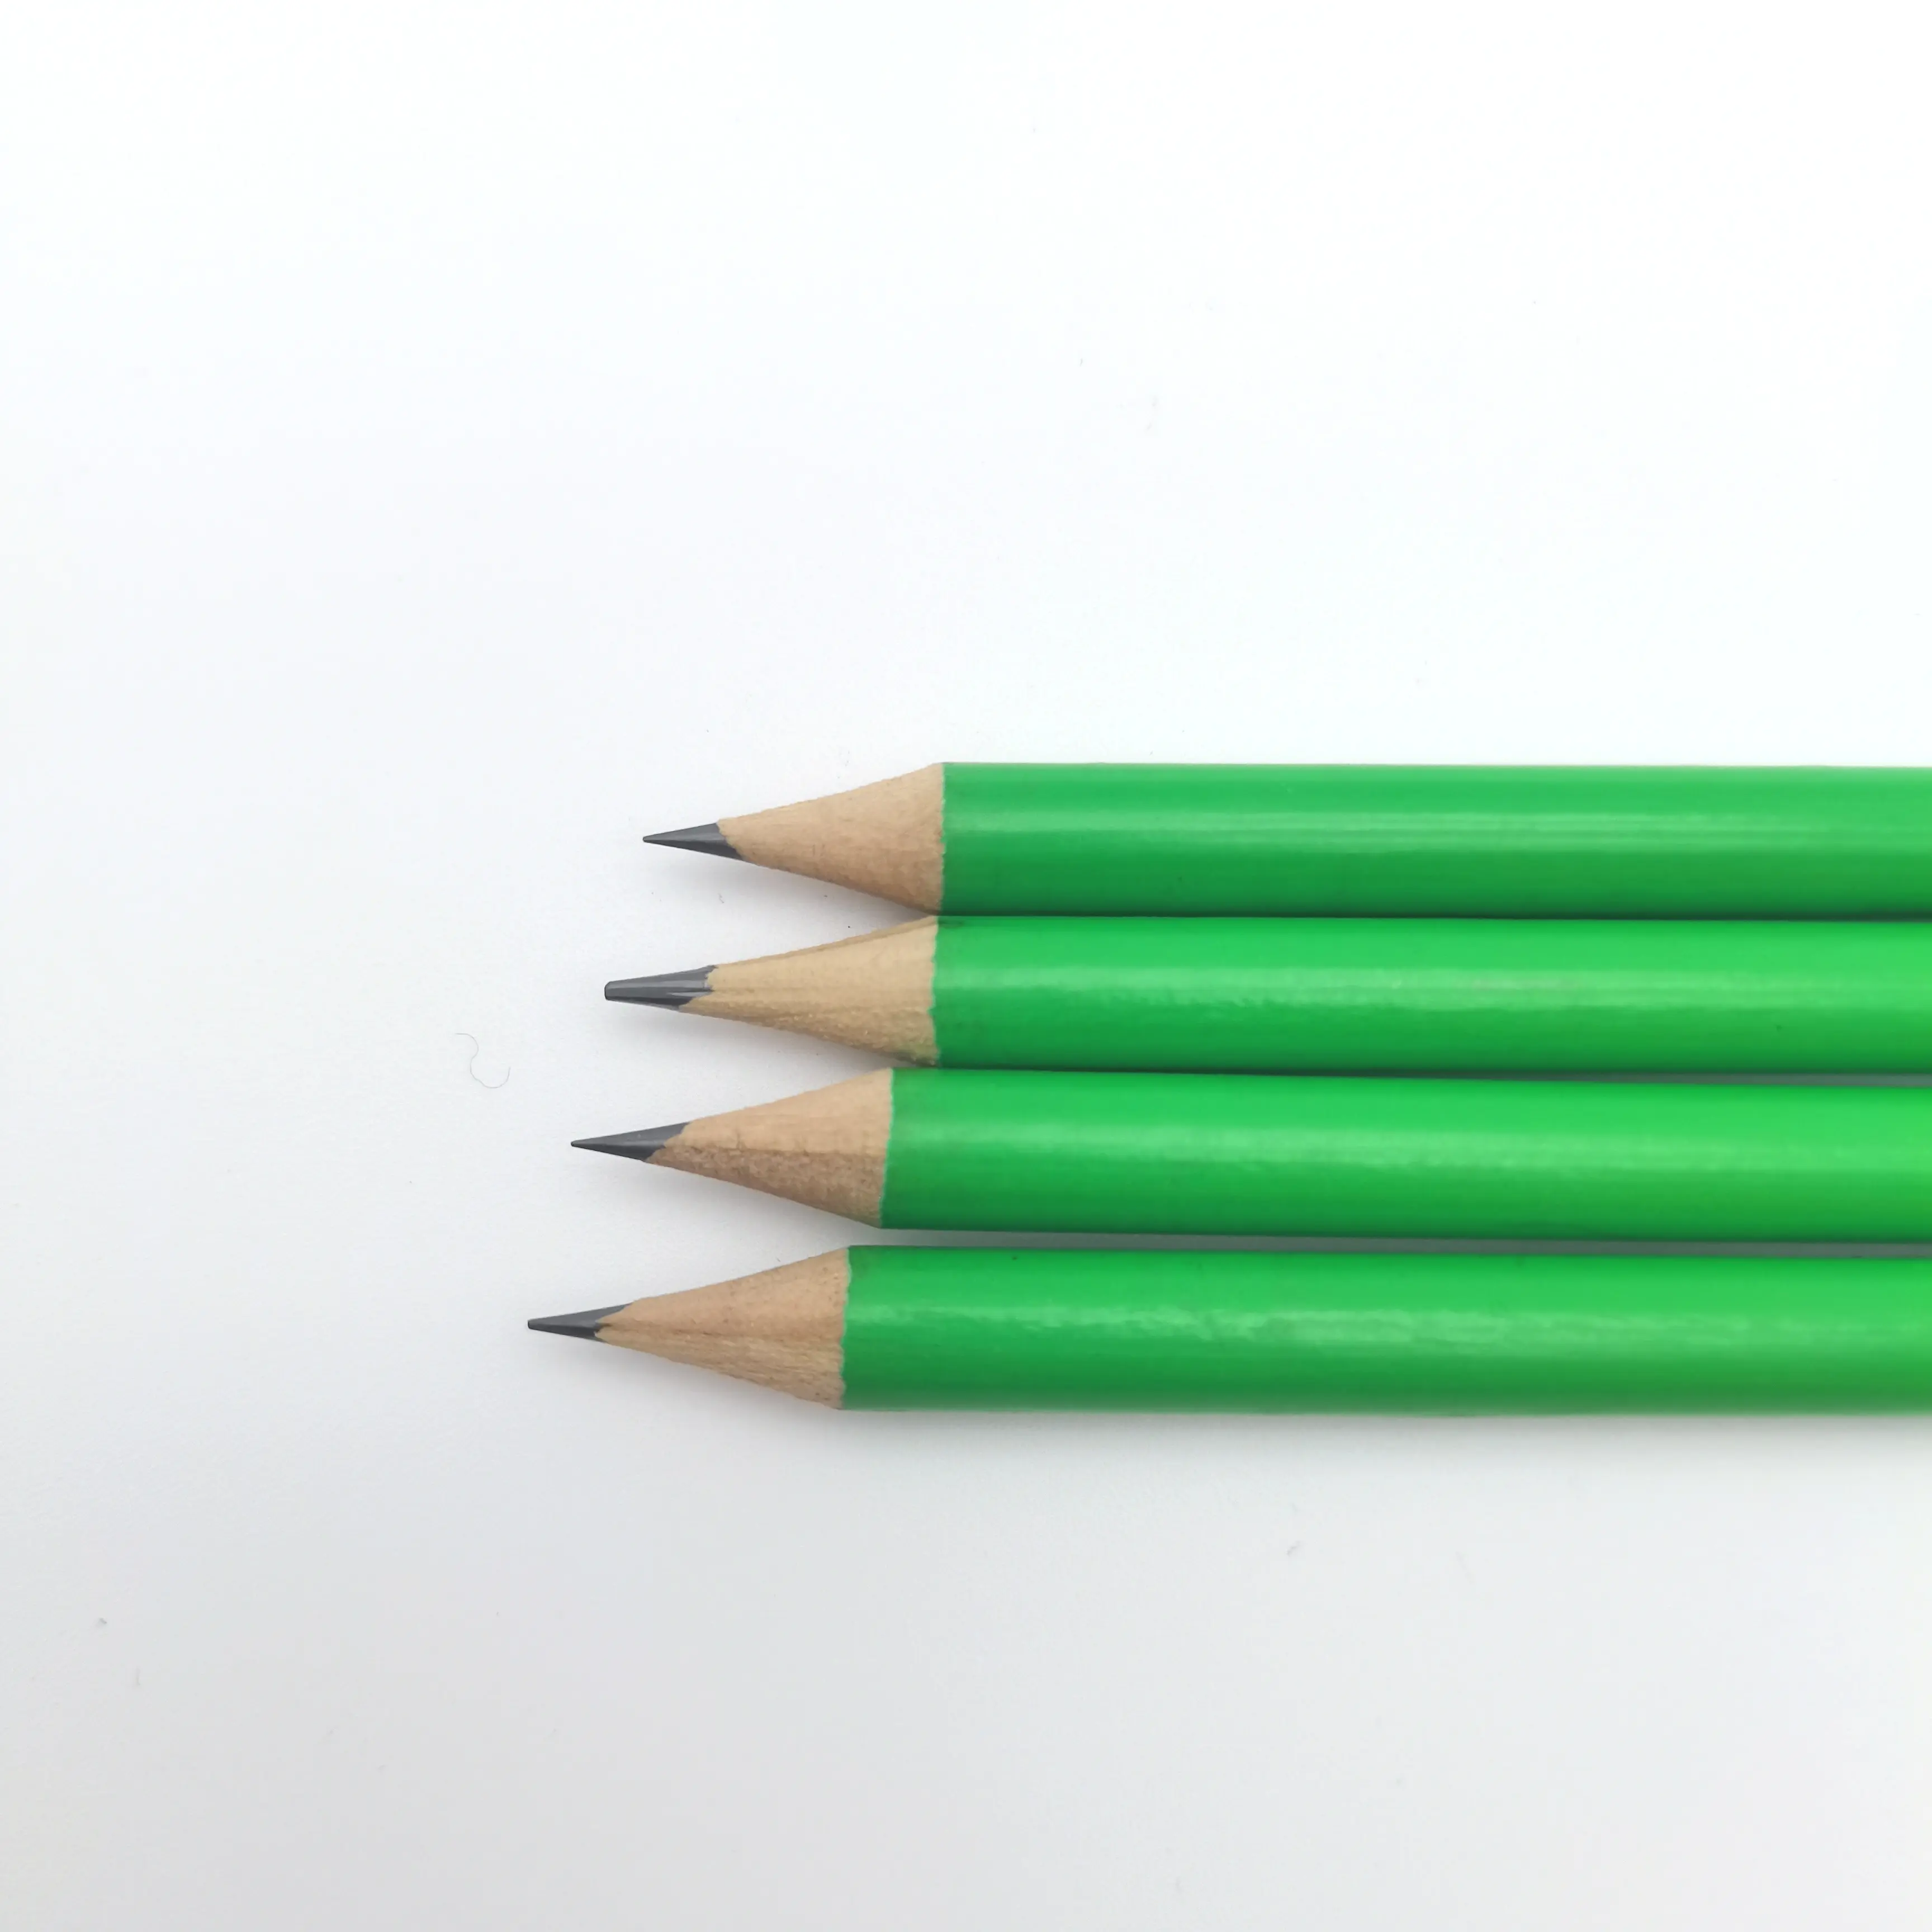 أقلام رصاص خضراء HB رخيصة السعر ورائجة المبيعات قلم رصاص خشبي من الجرافيت هدية مكتبية ومدرسة للطلاب والأطفال